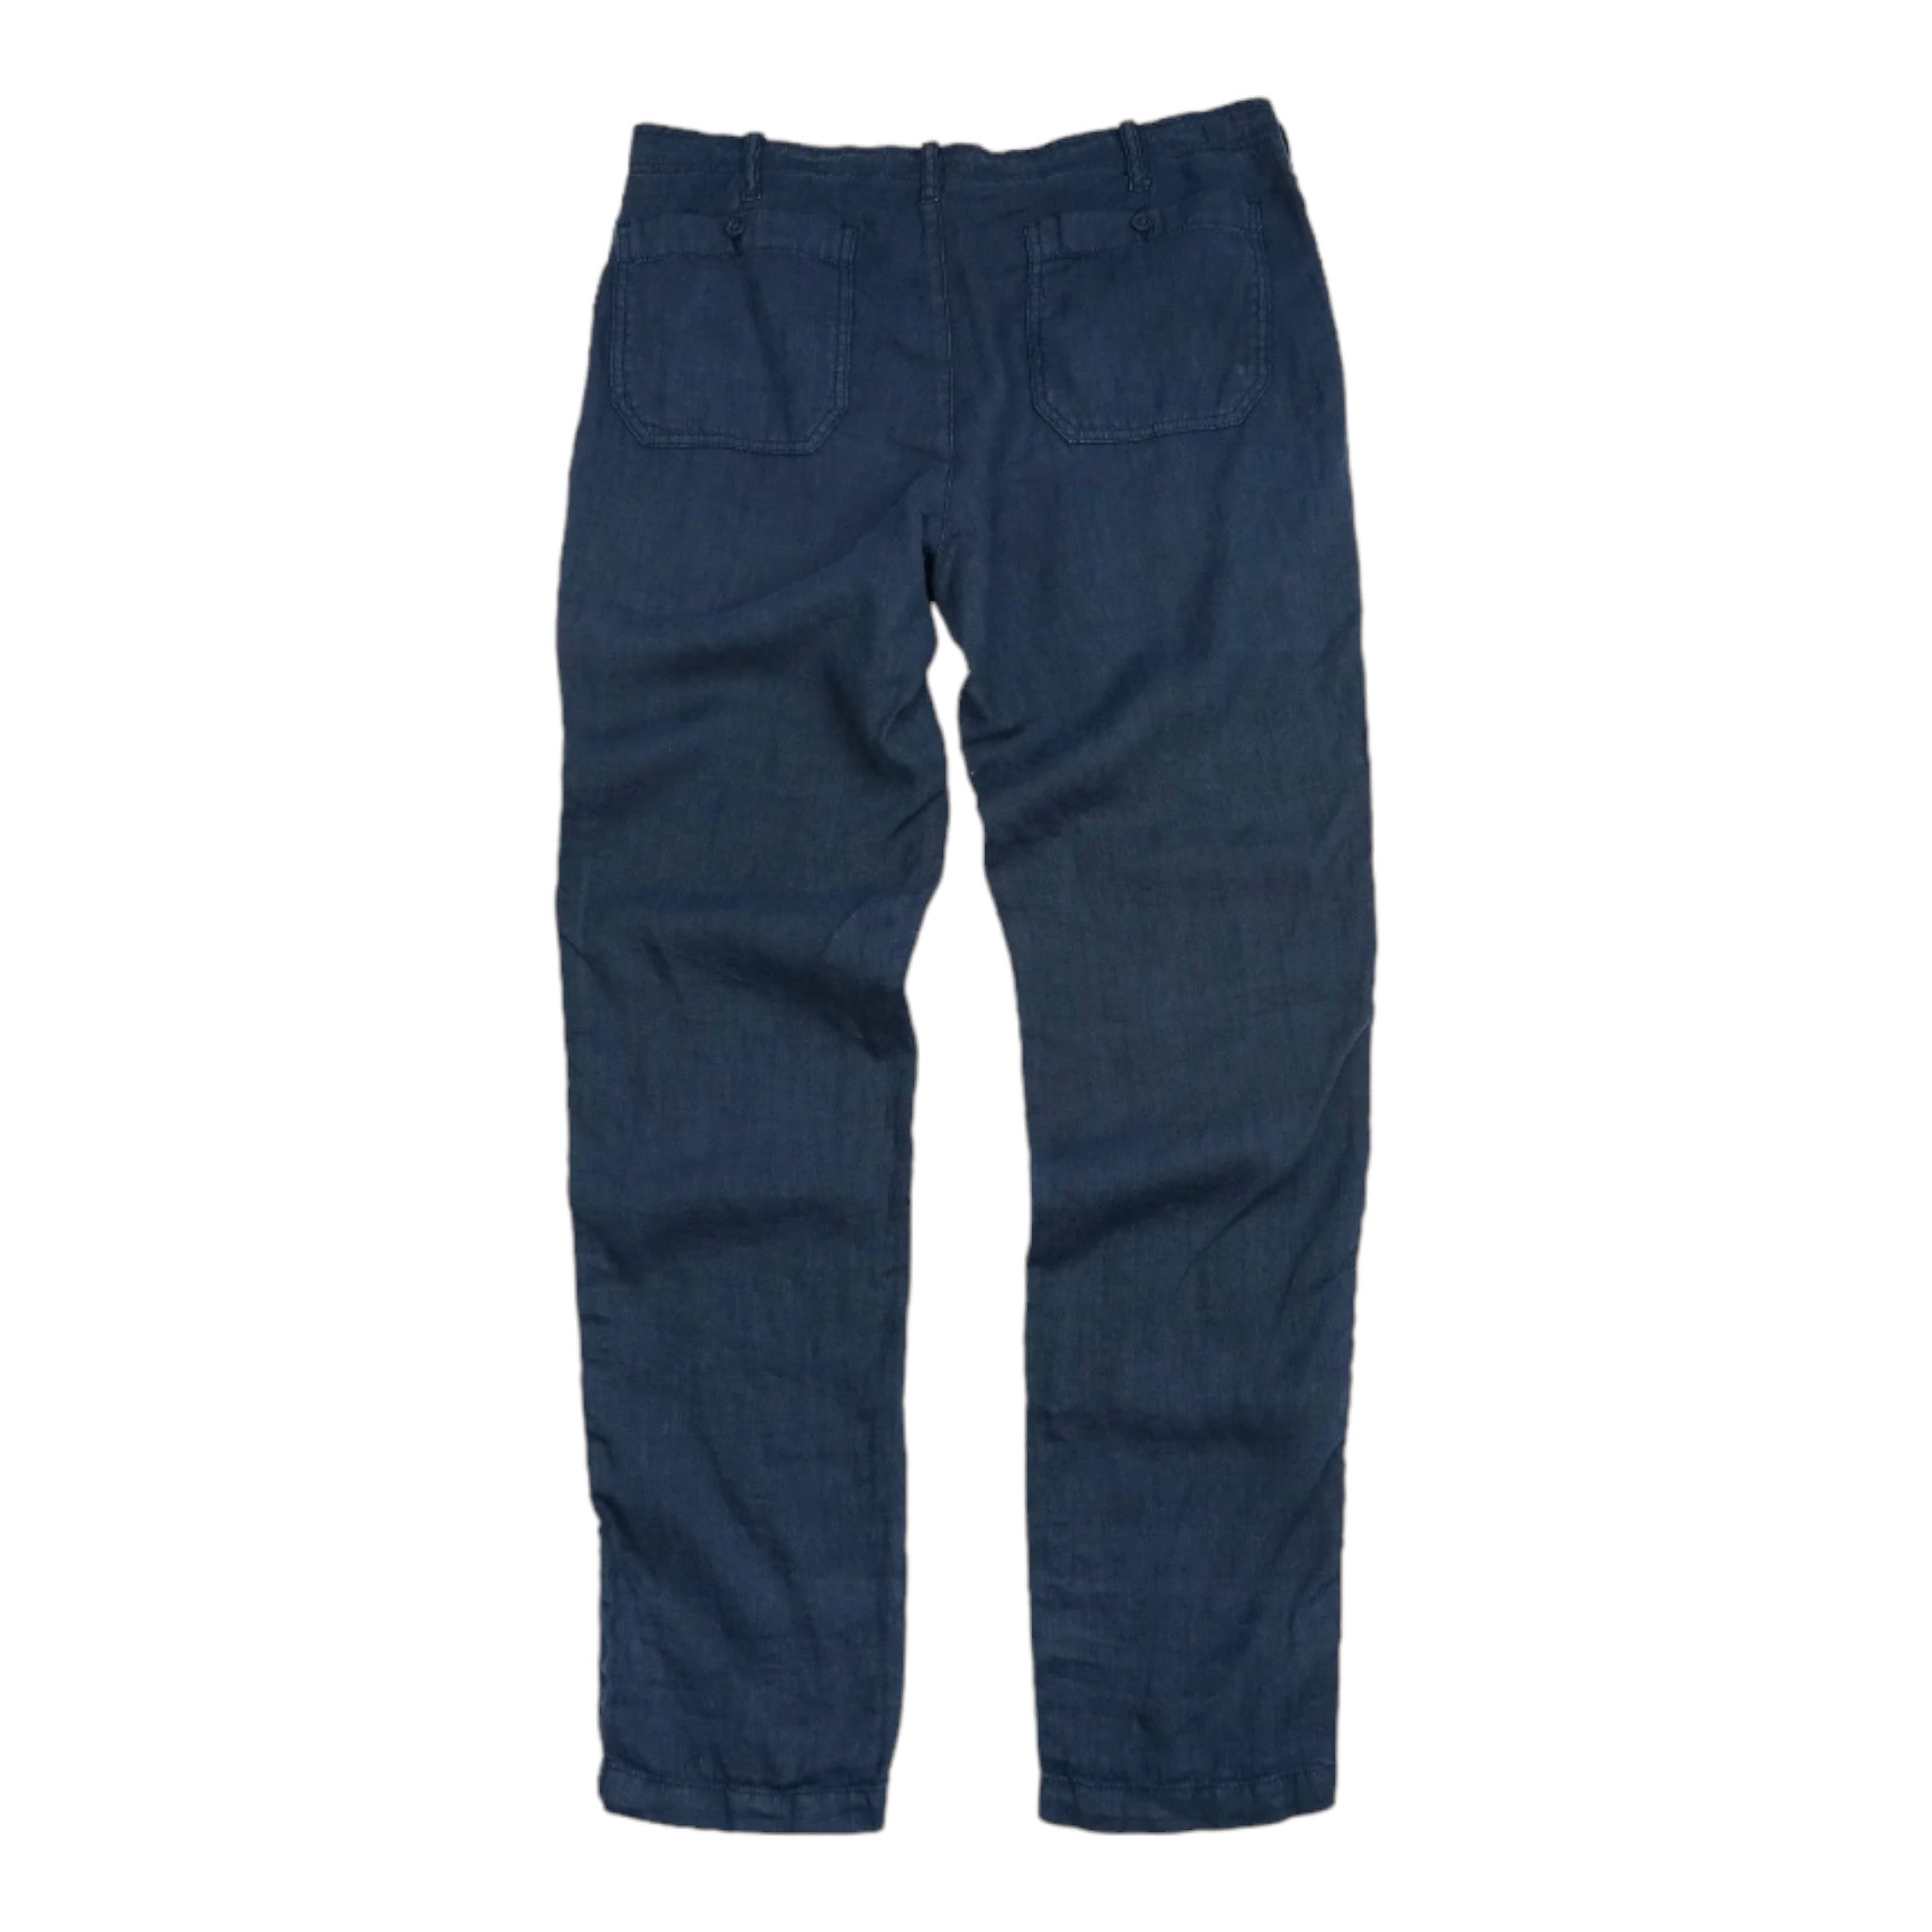 Benson - Key West Linen Pants - Navy